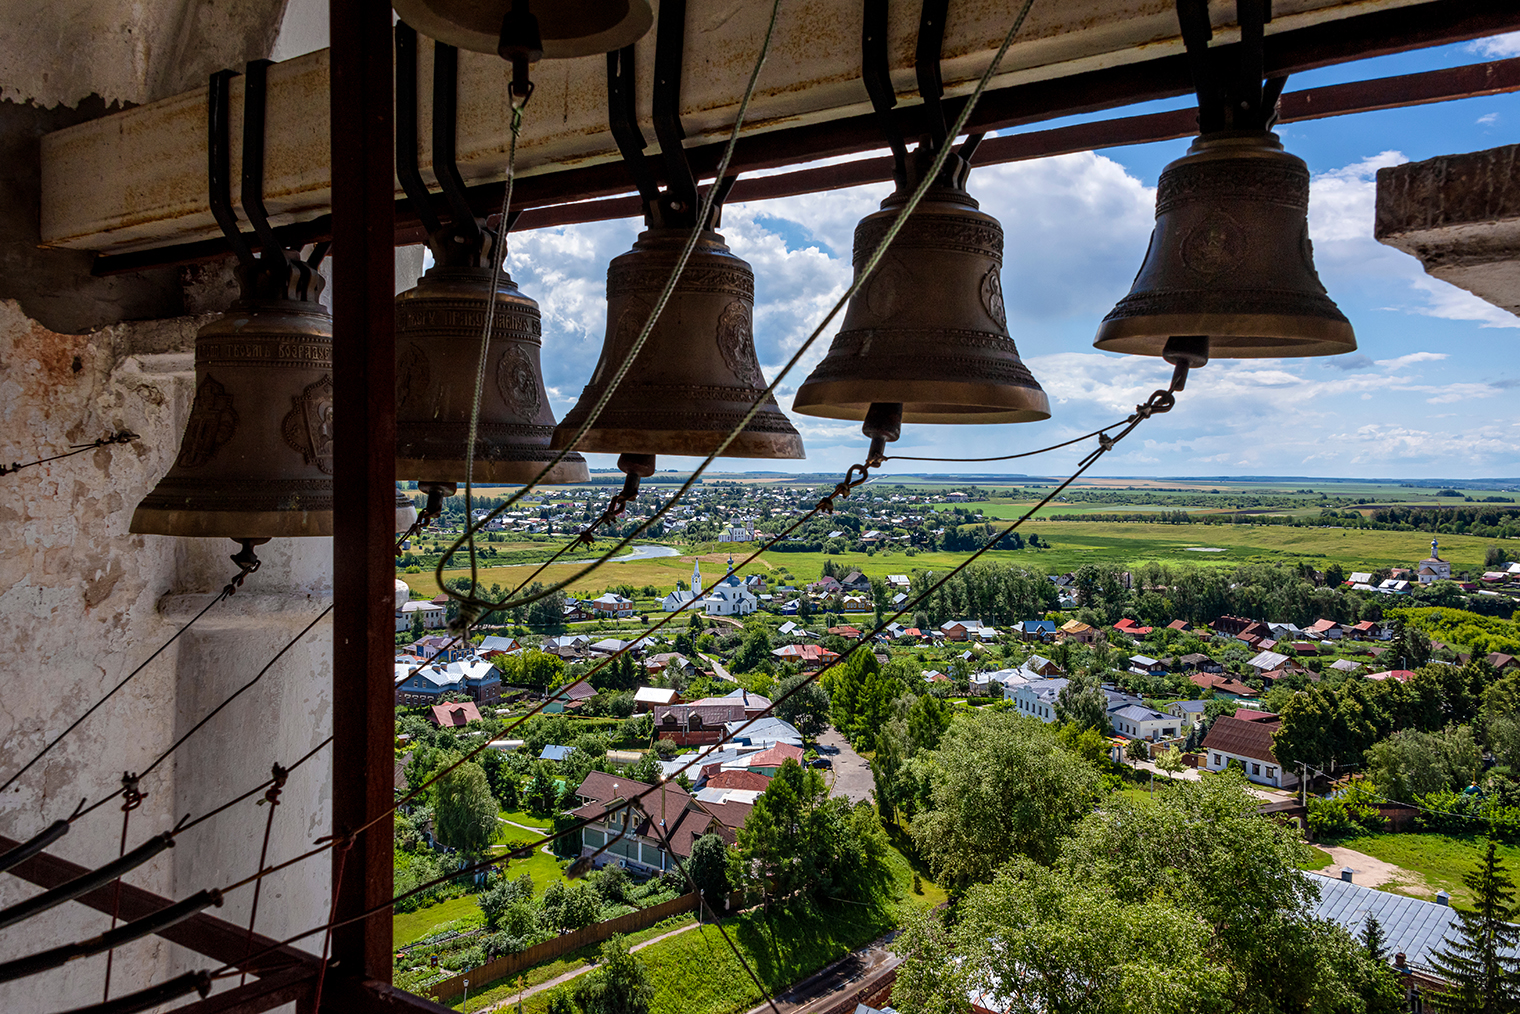 Подъем на колокольню стоит того. Виды открываются волшебные. Фотография: Rolf G Wackenberg / Shutterstock / FOTODOM